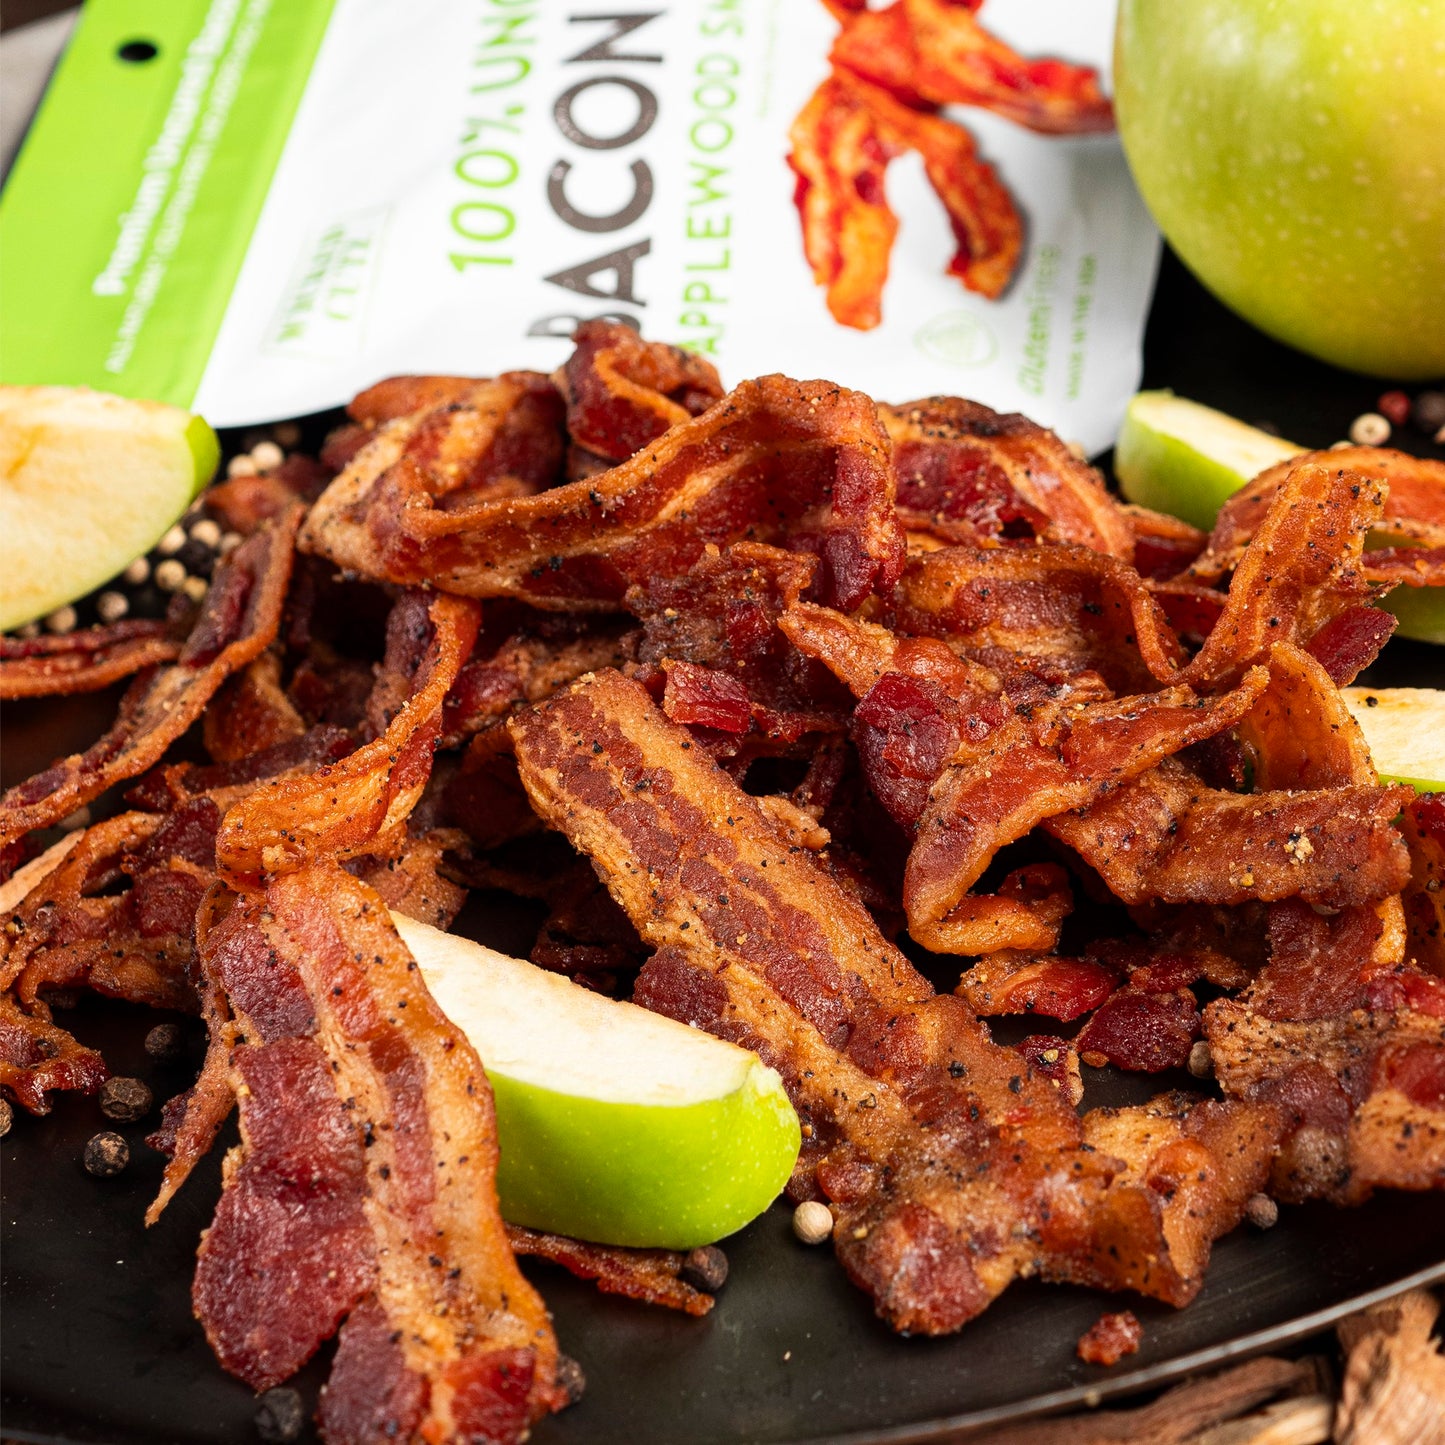 Wicked Cutz Applewood Smoked - Bacon Jerky 2.0oz